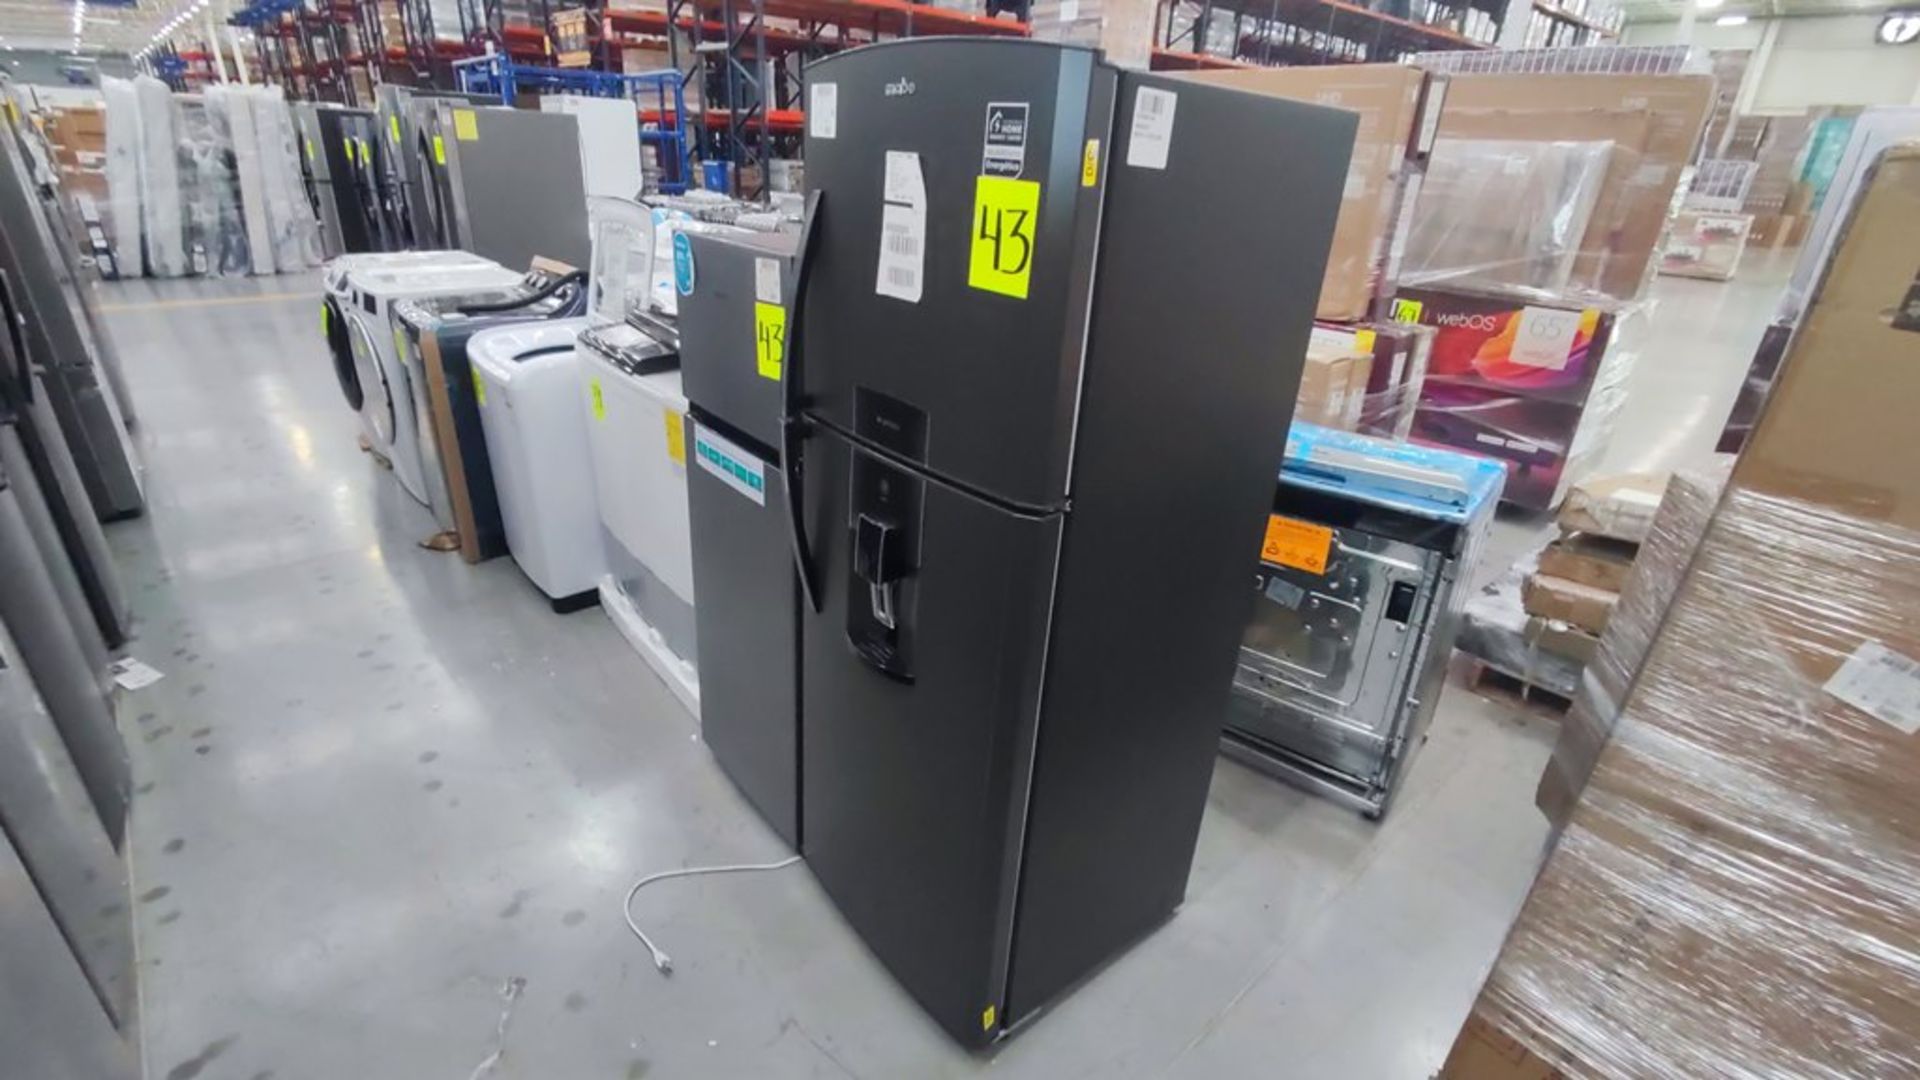 Lote de 2 Refrigeradores contiene: 1 Refrigerador Marca Mabe, Modelo RME360FD, No de serie 2206B511 - Image 7 of 11